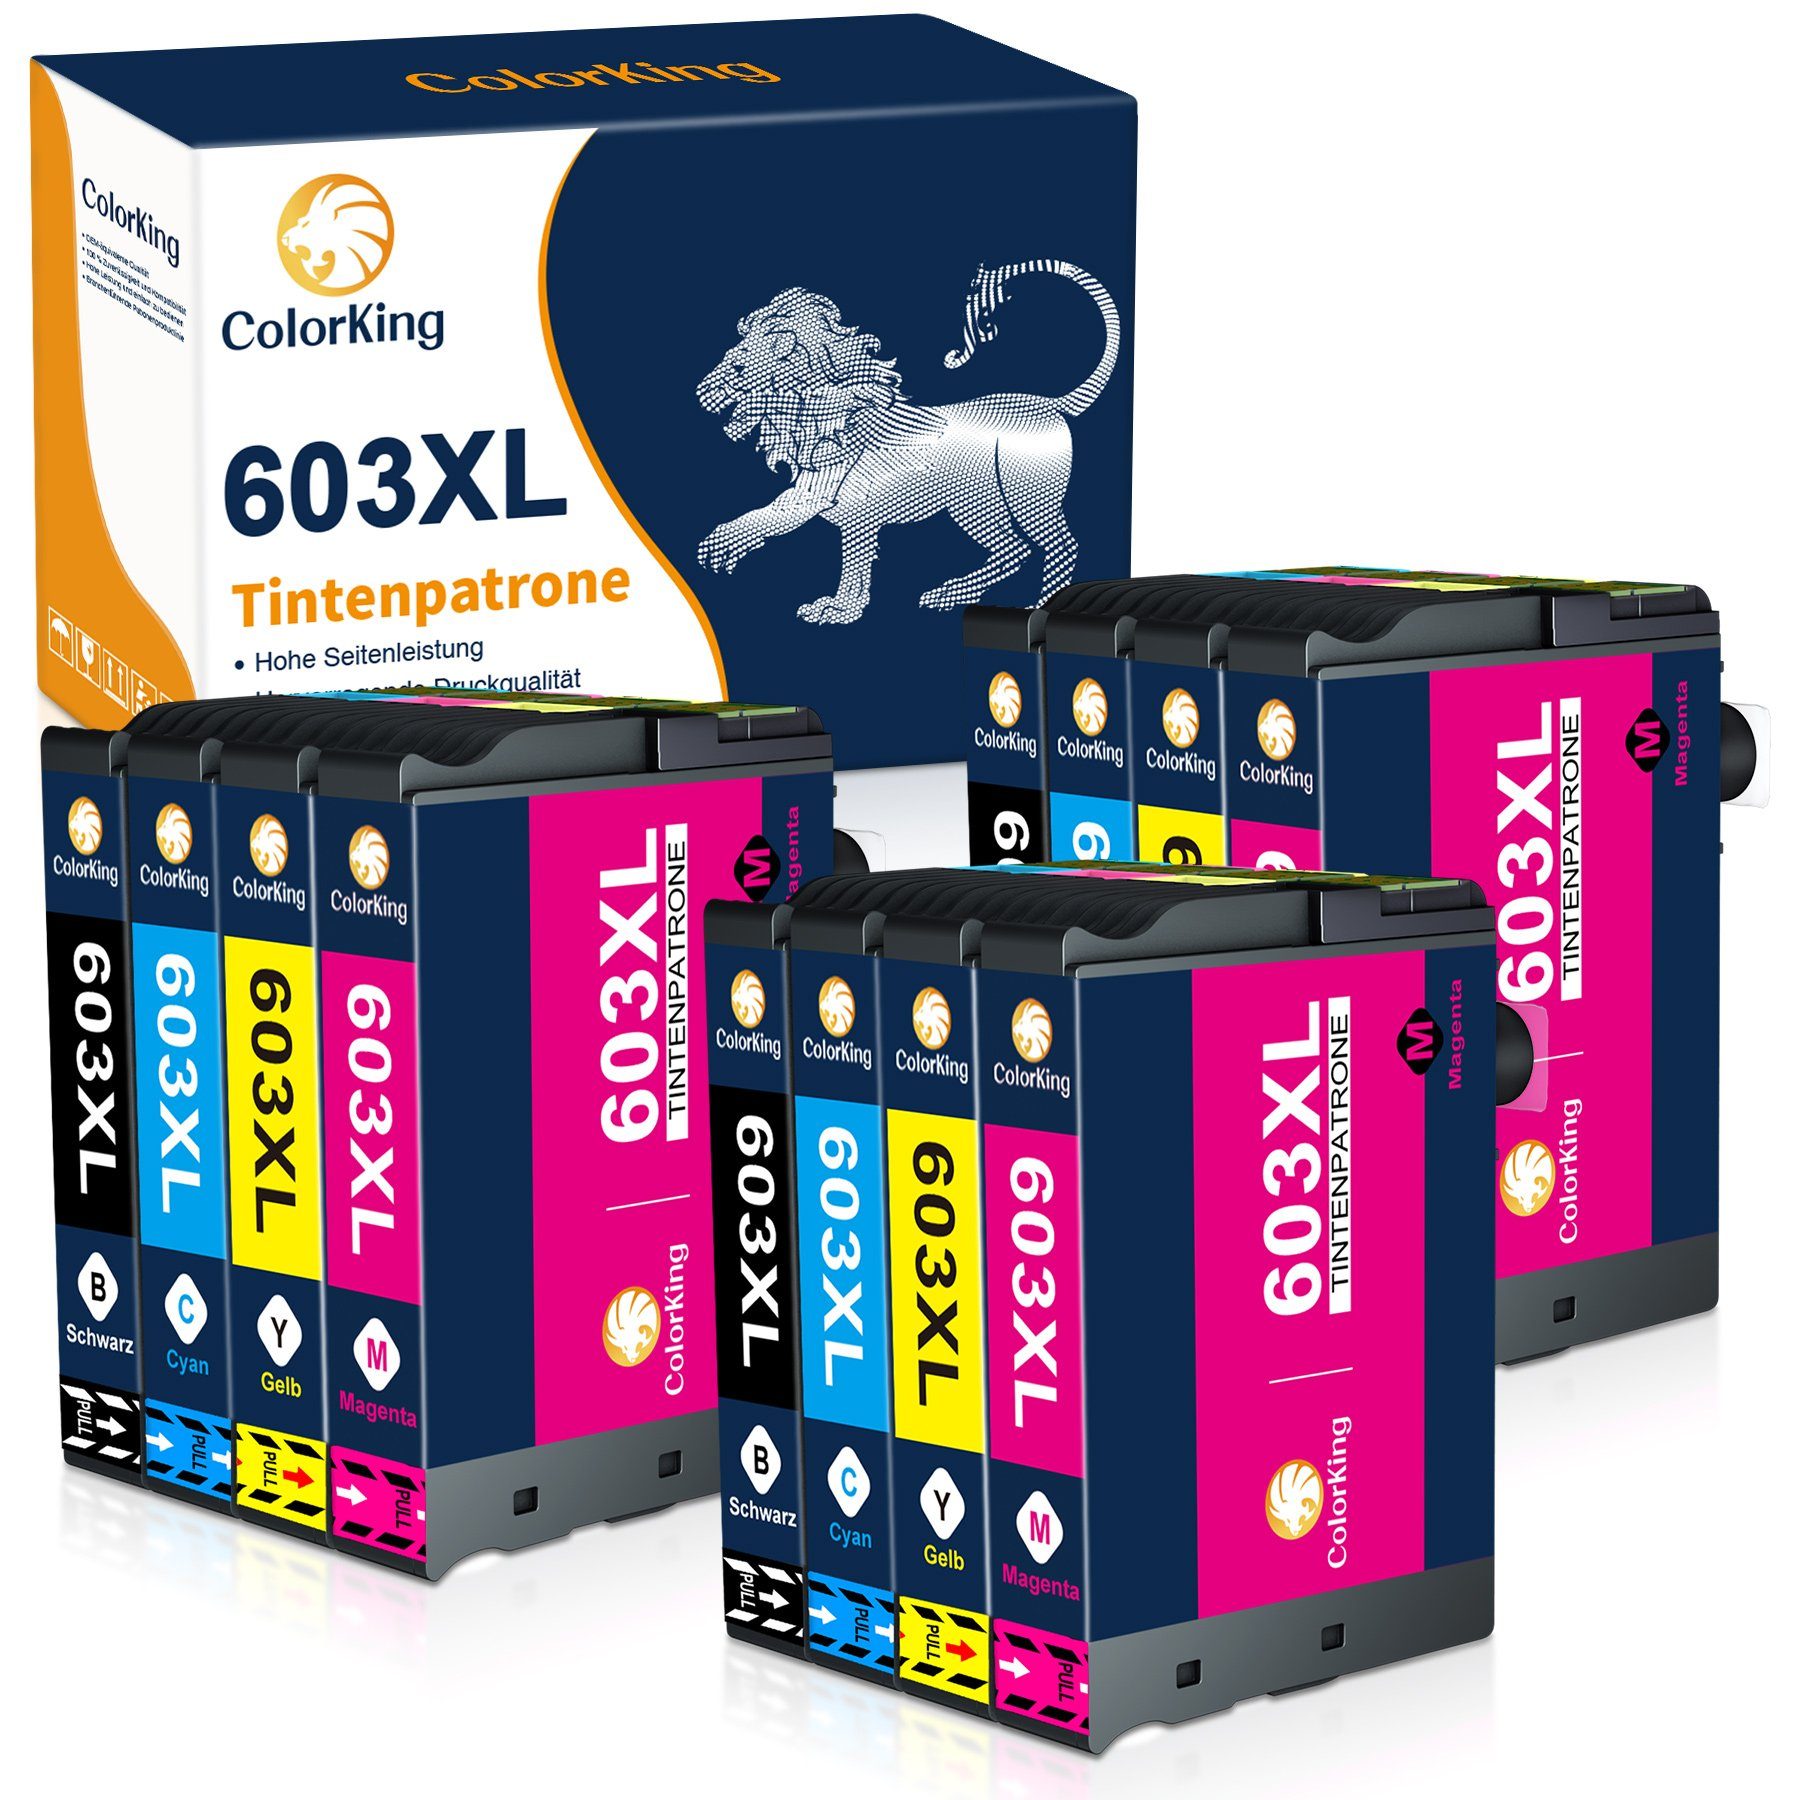 ColorKing 603XL multipack Tintenpatrone (Ersatz für Workforce WF-2835 2850 2830 2810) 3* Schwarz, 3* Cyan, 3* Magenta, 3* Gelb (12er Set) | Tintenpatronen